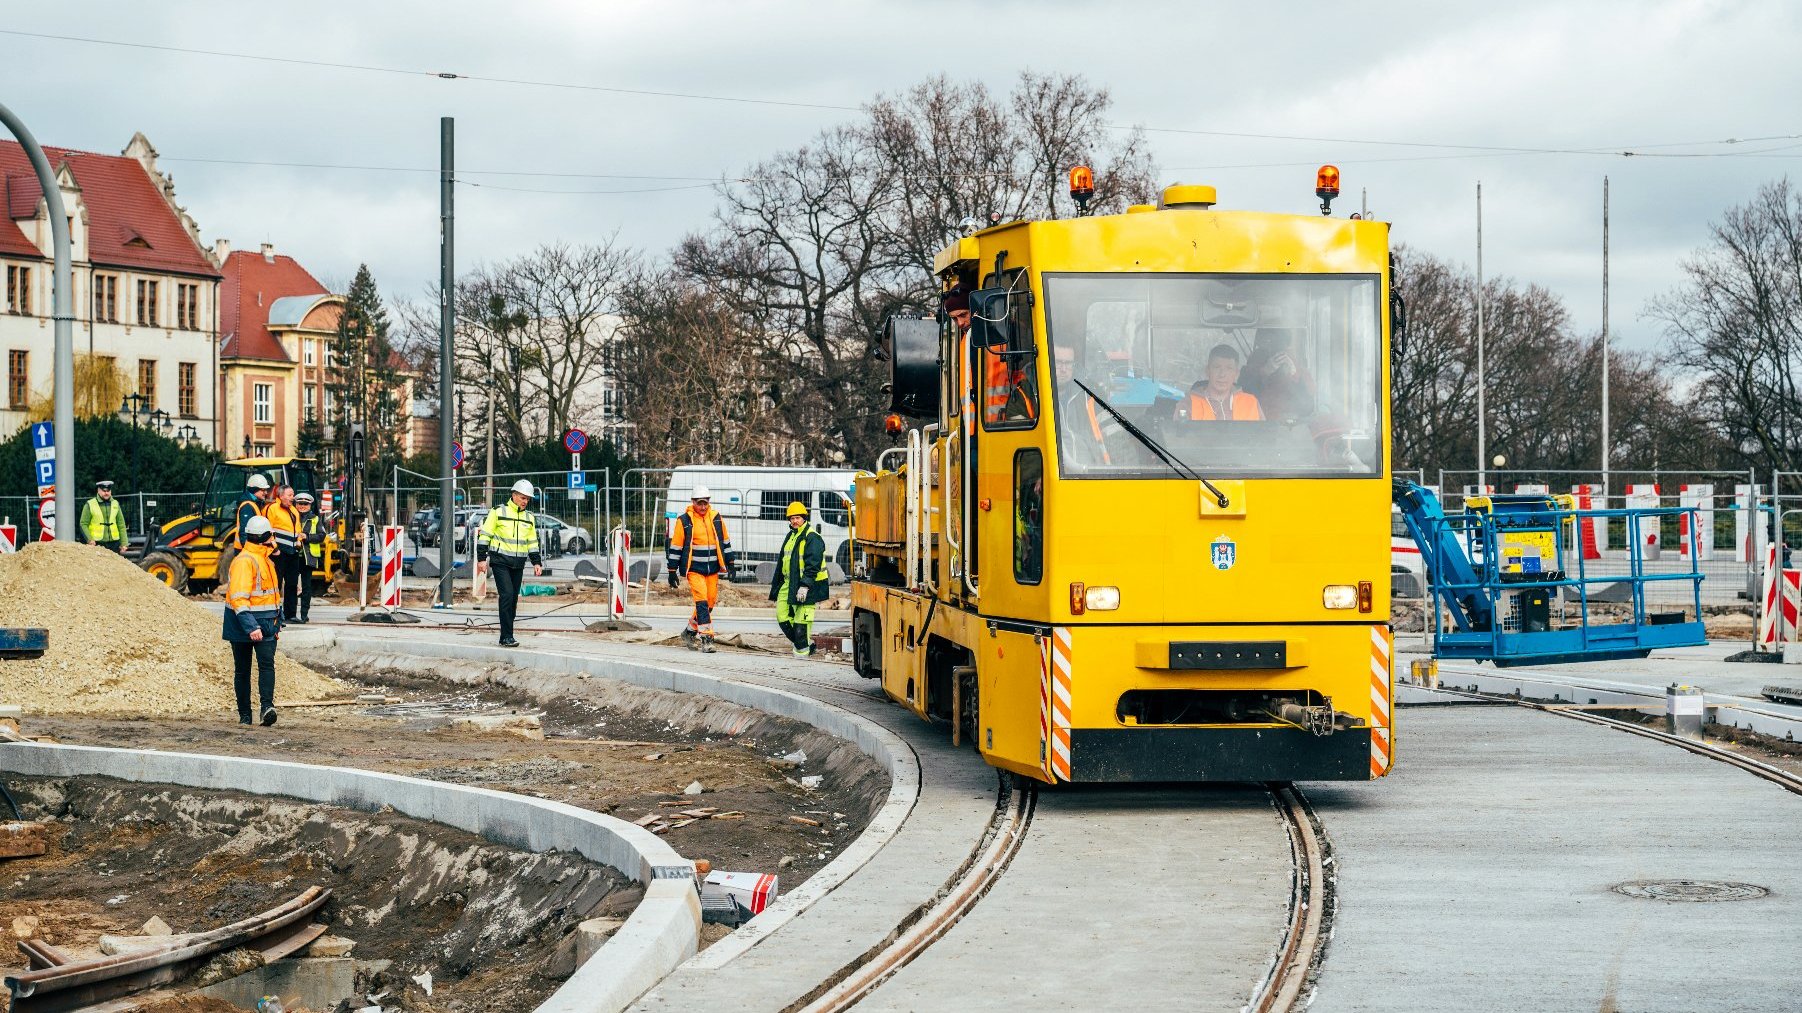 Galeria zdjęć przedstawia remontowany odcinek torów tramwajowych, po których przejeżdżał tekstowo pojazd szynowy